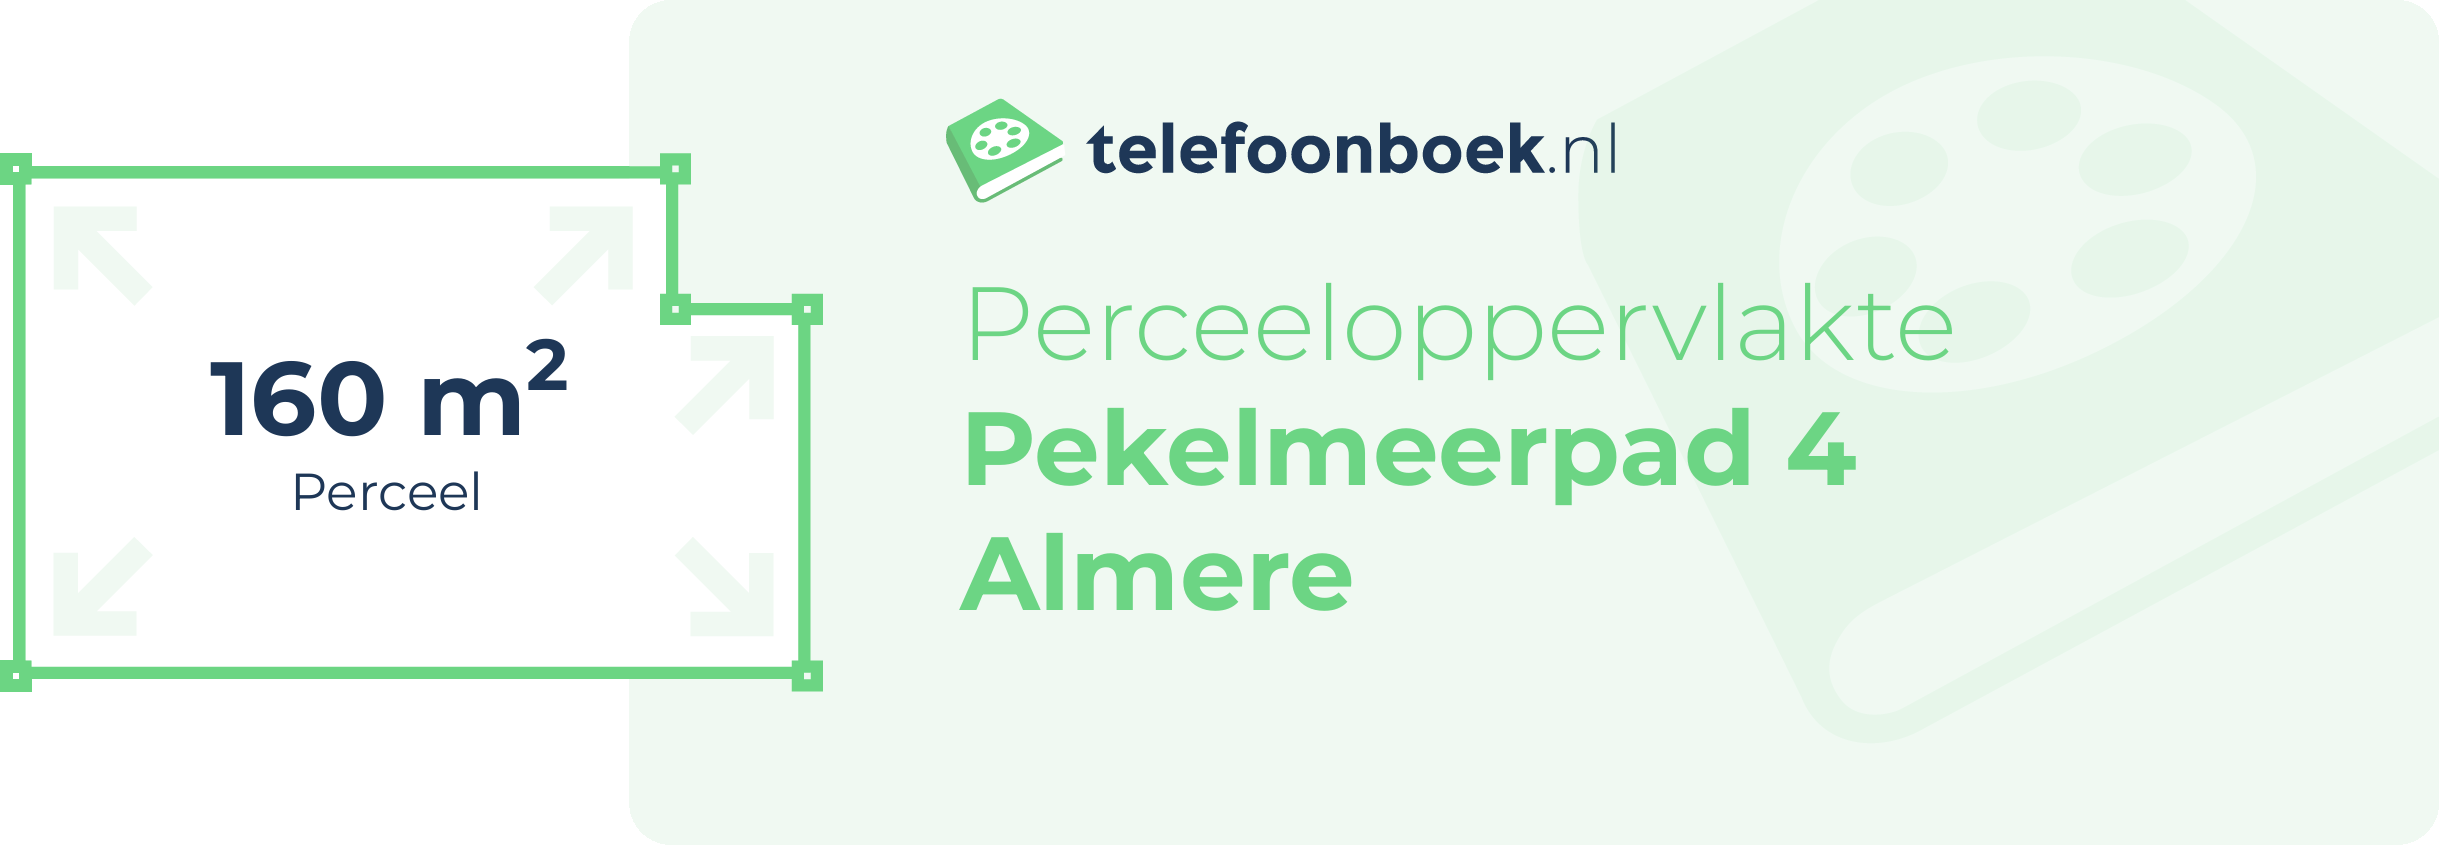 Perceeloppervlakte Pekelmeerpad 4 Almere